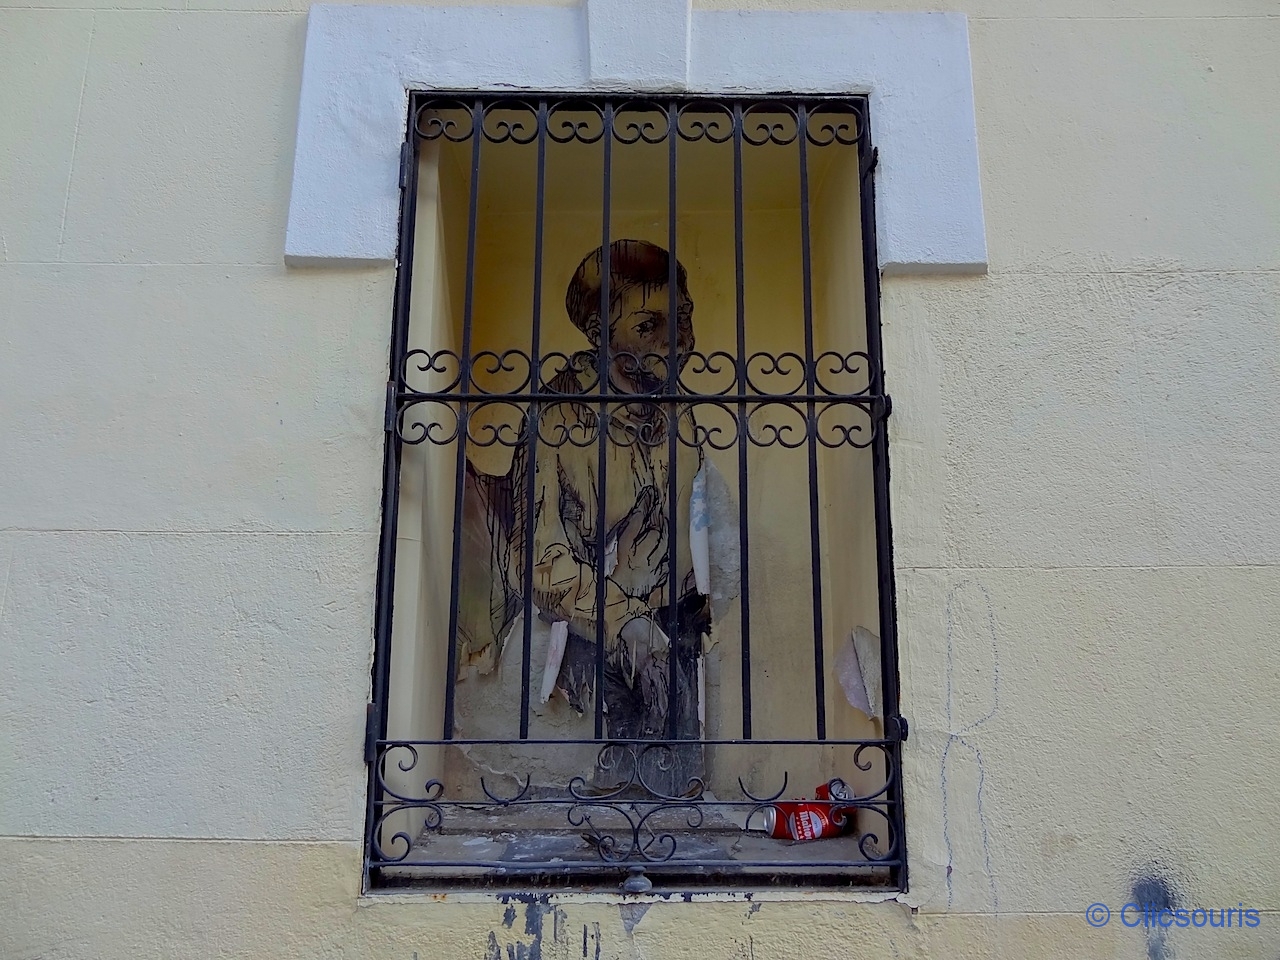 Madrid Lavapies Street Art